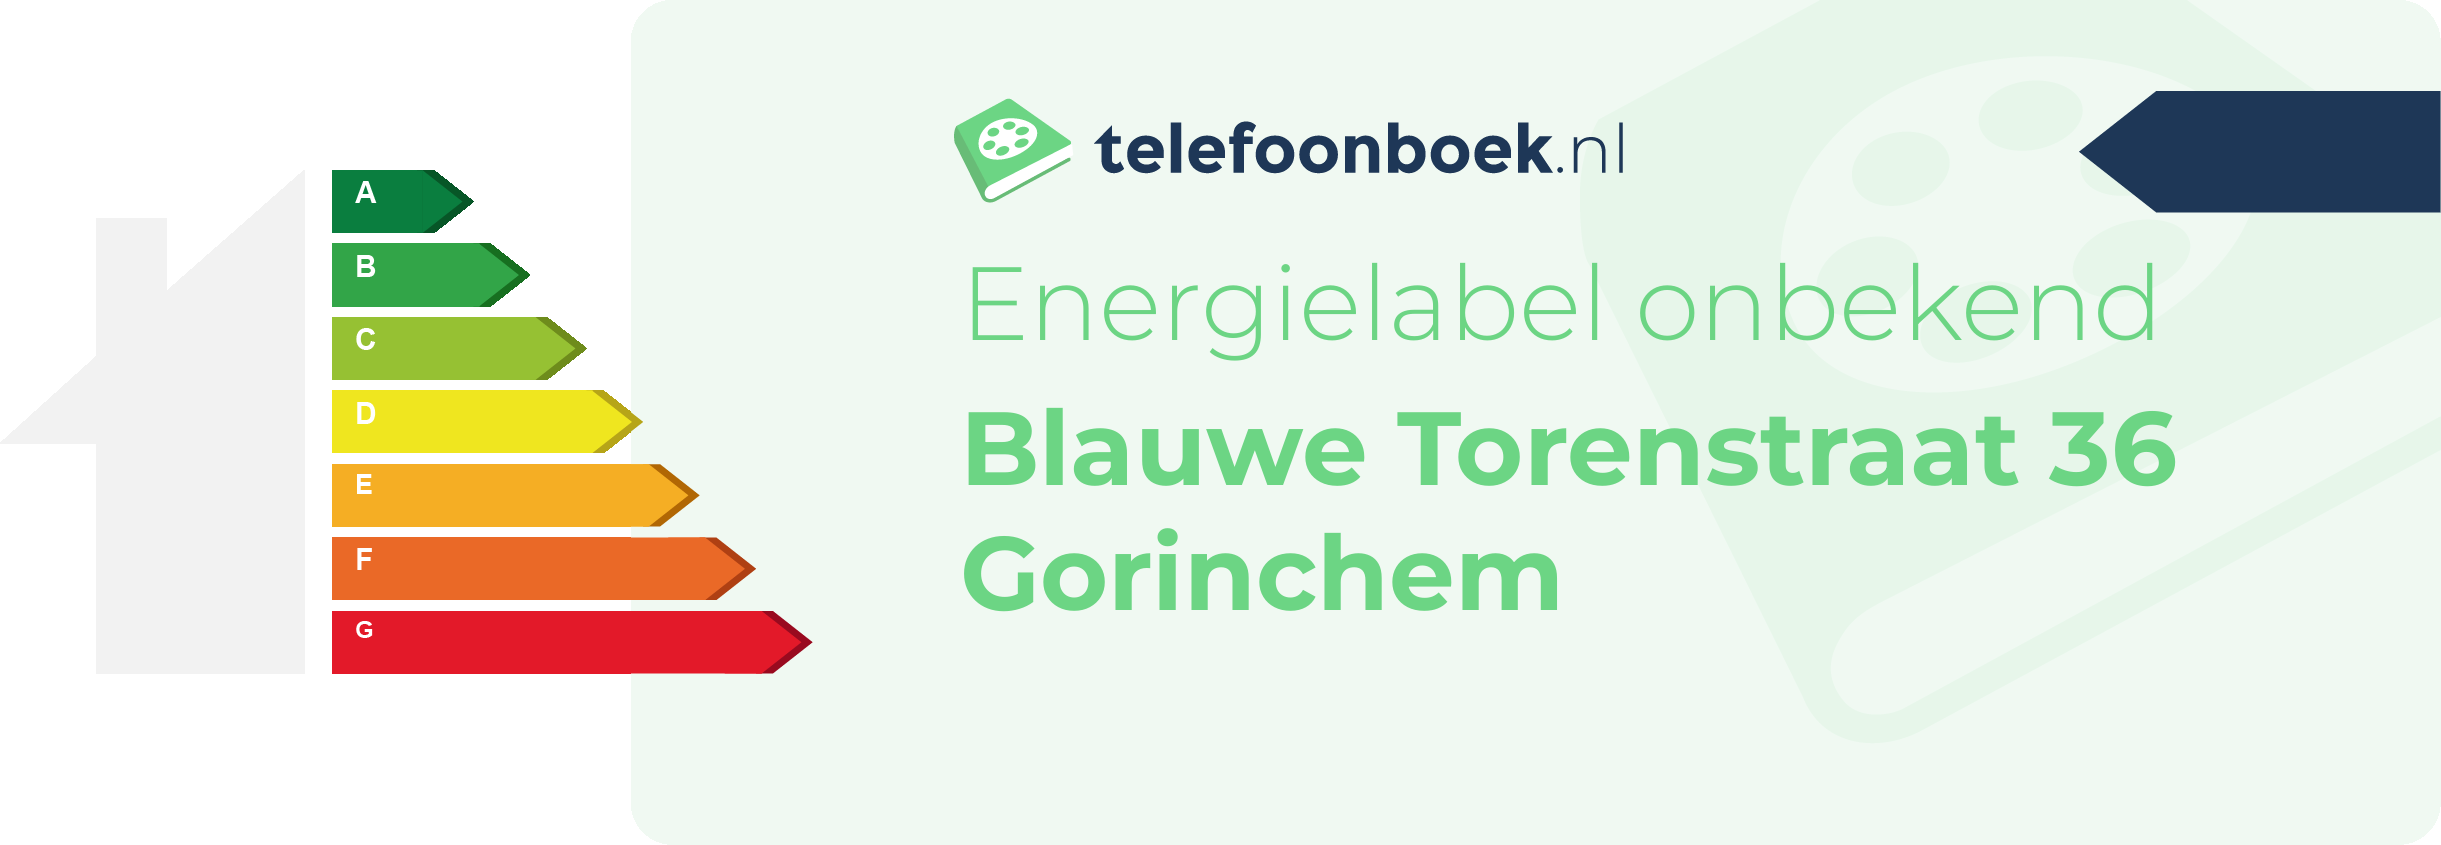 Energielabel Blauwe Torenstraat 36 Gorinchem